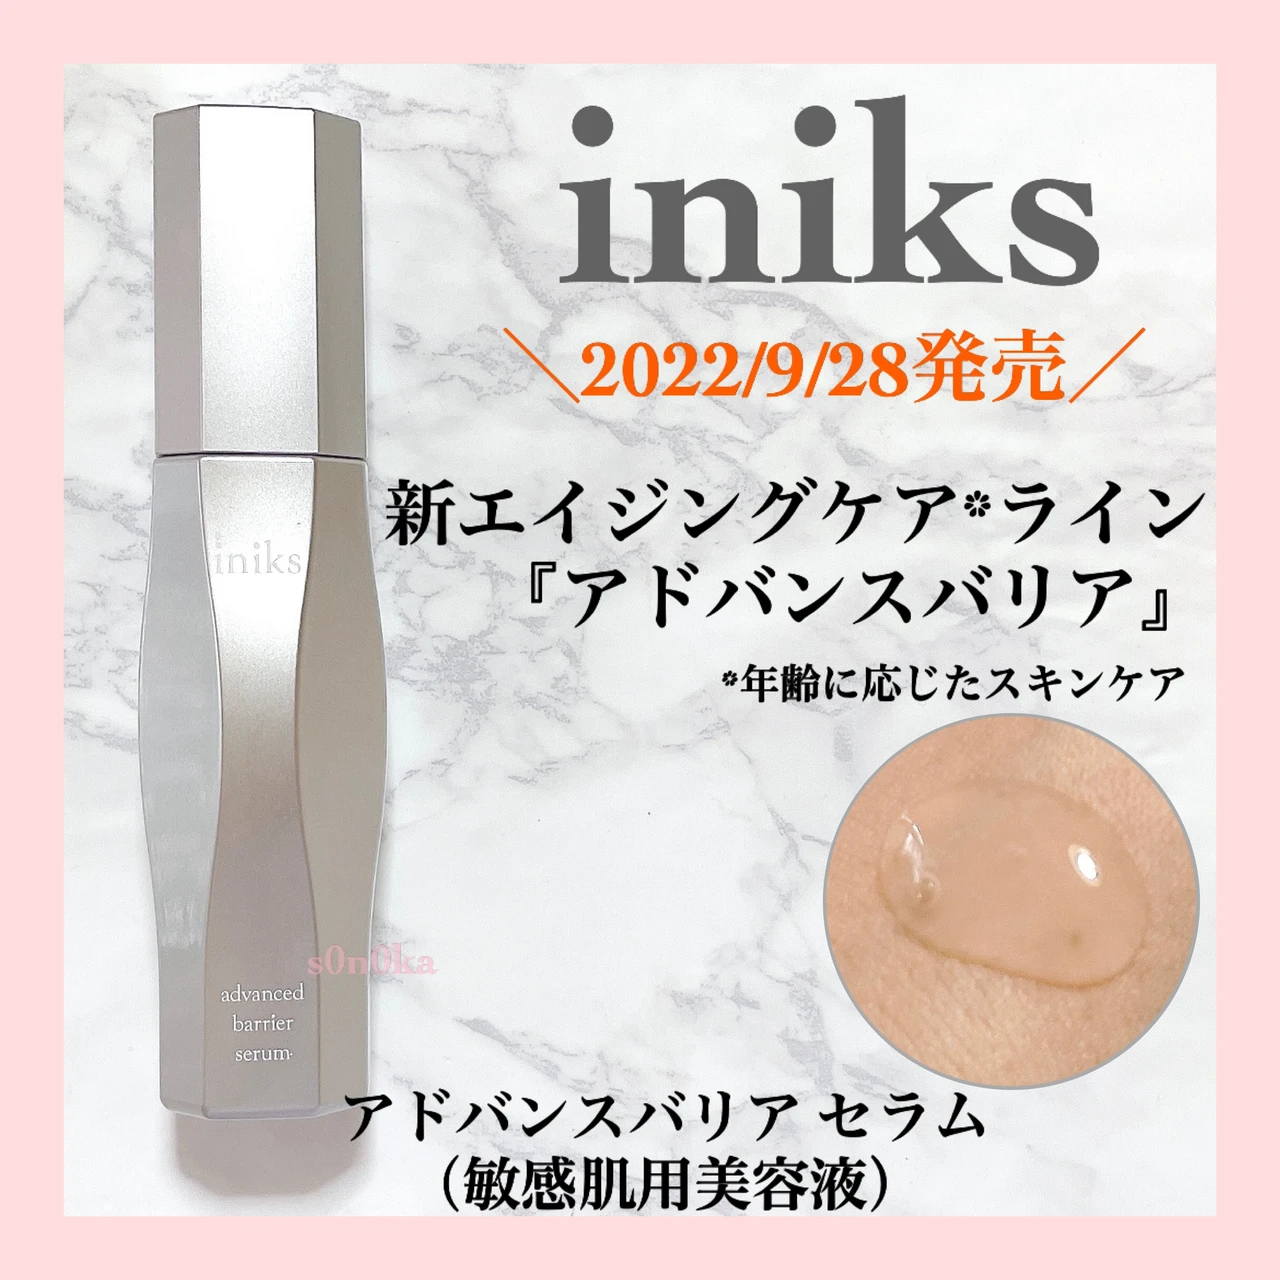 【2022/9/28(水)発売】
iniks(イニクス)より年齢敏感肌の為の、新エイジングケアライン『アドバンスバリア』が登場！美容液をレビューします_1